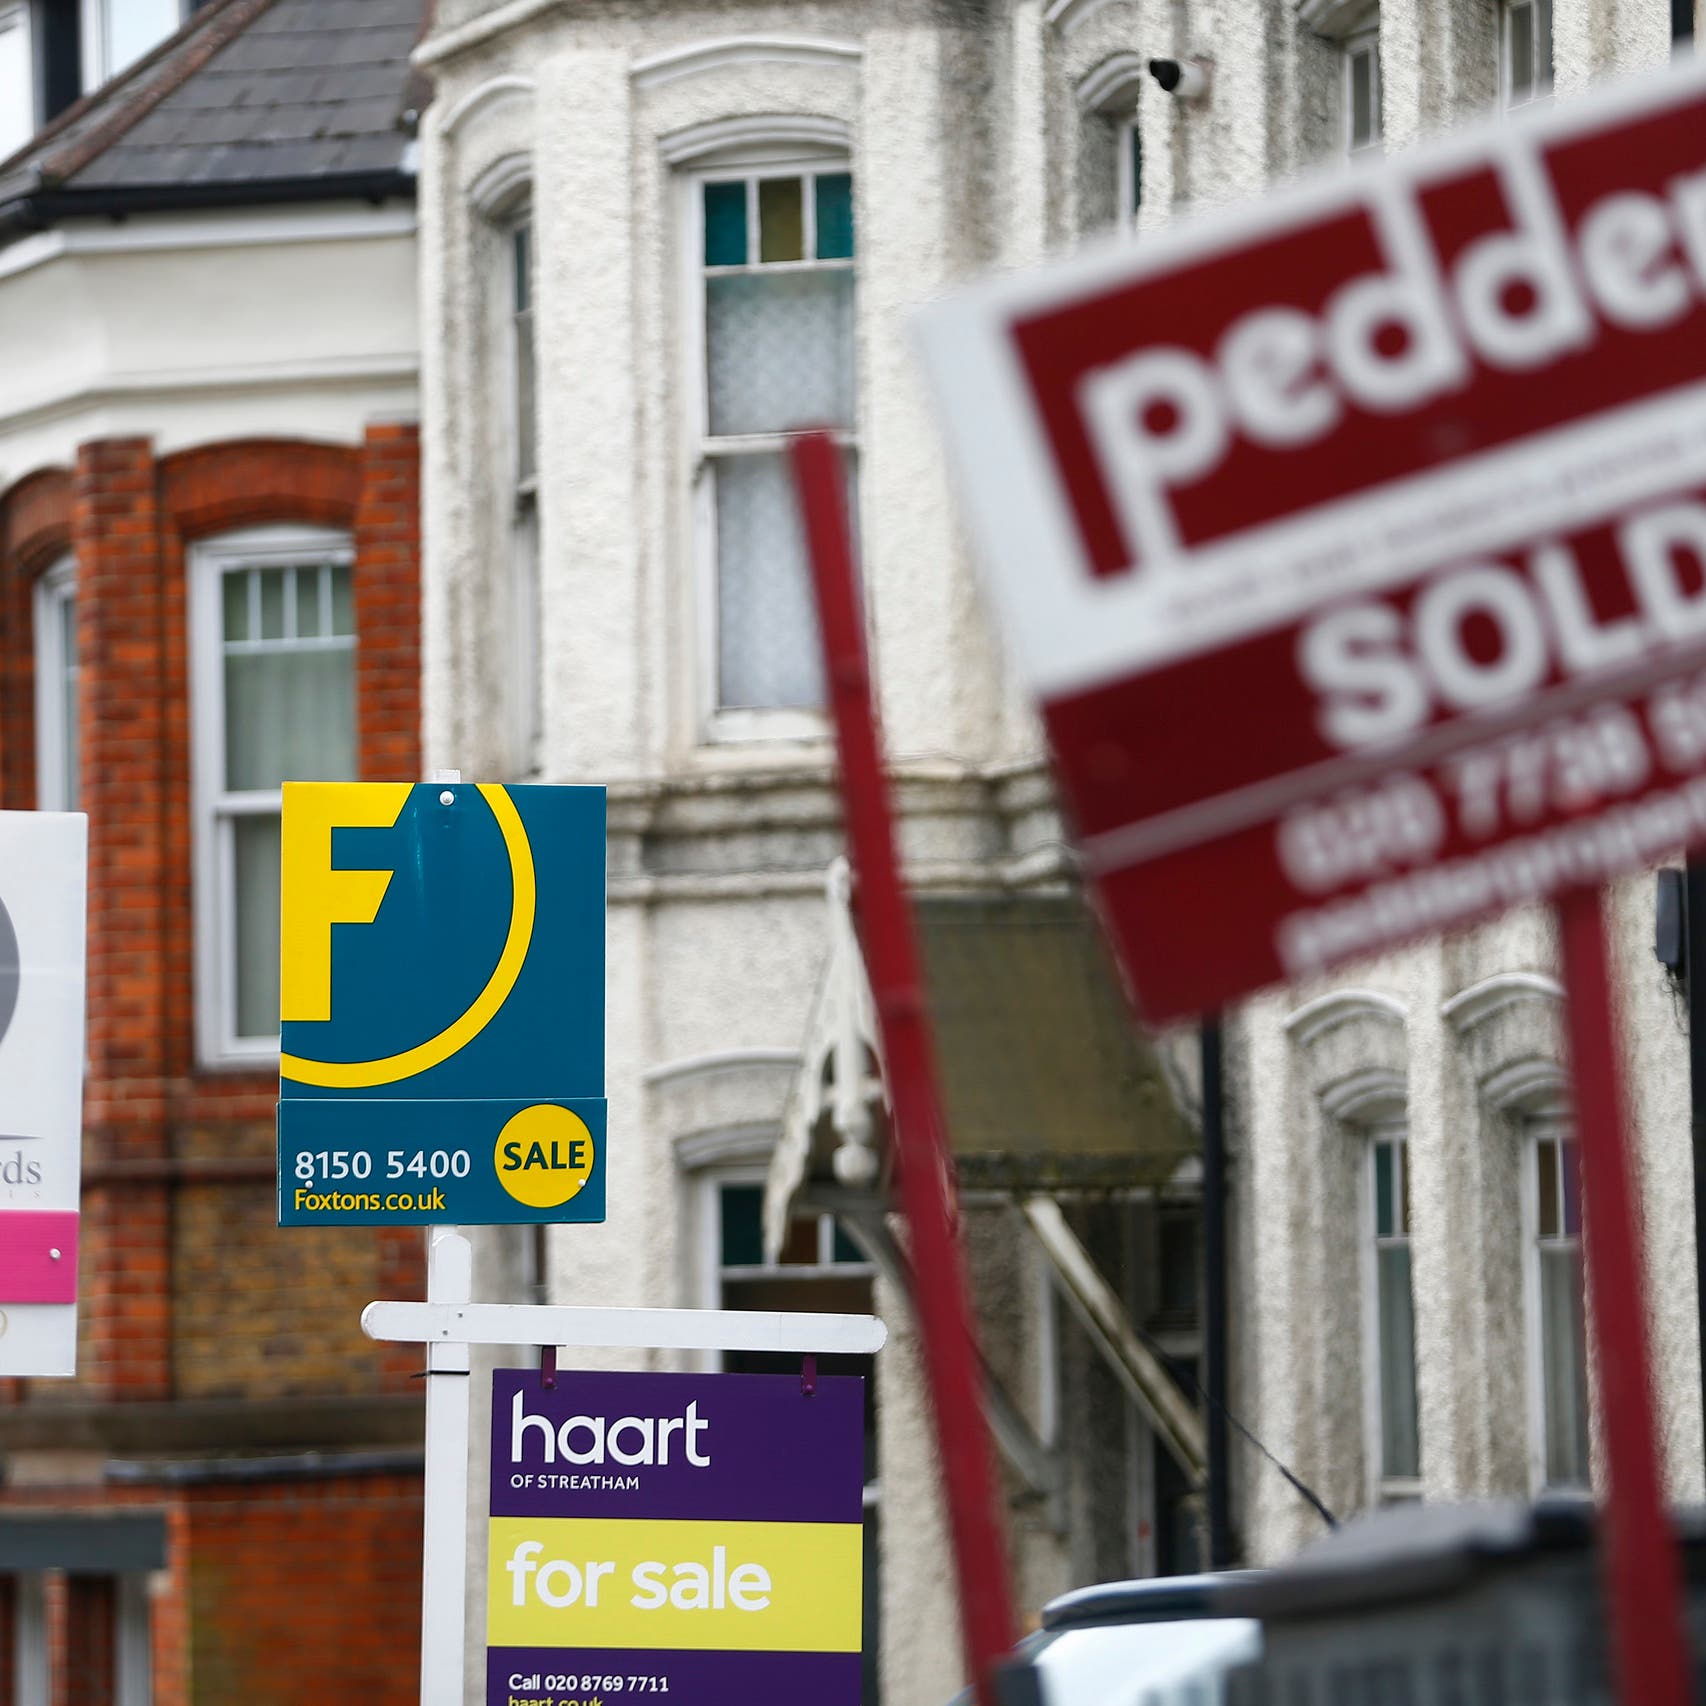 أسعار العقارات السكنية في بريطانيا تسجل أكبر ارتفاع في 15 عاماً